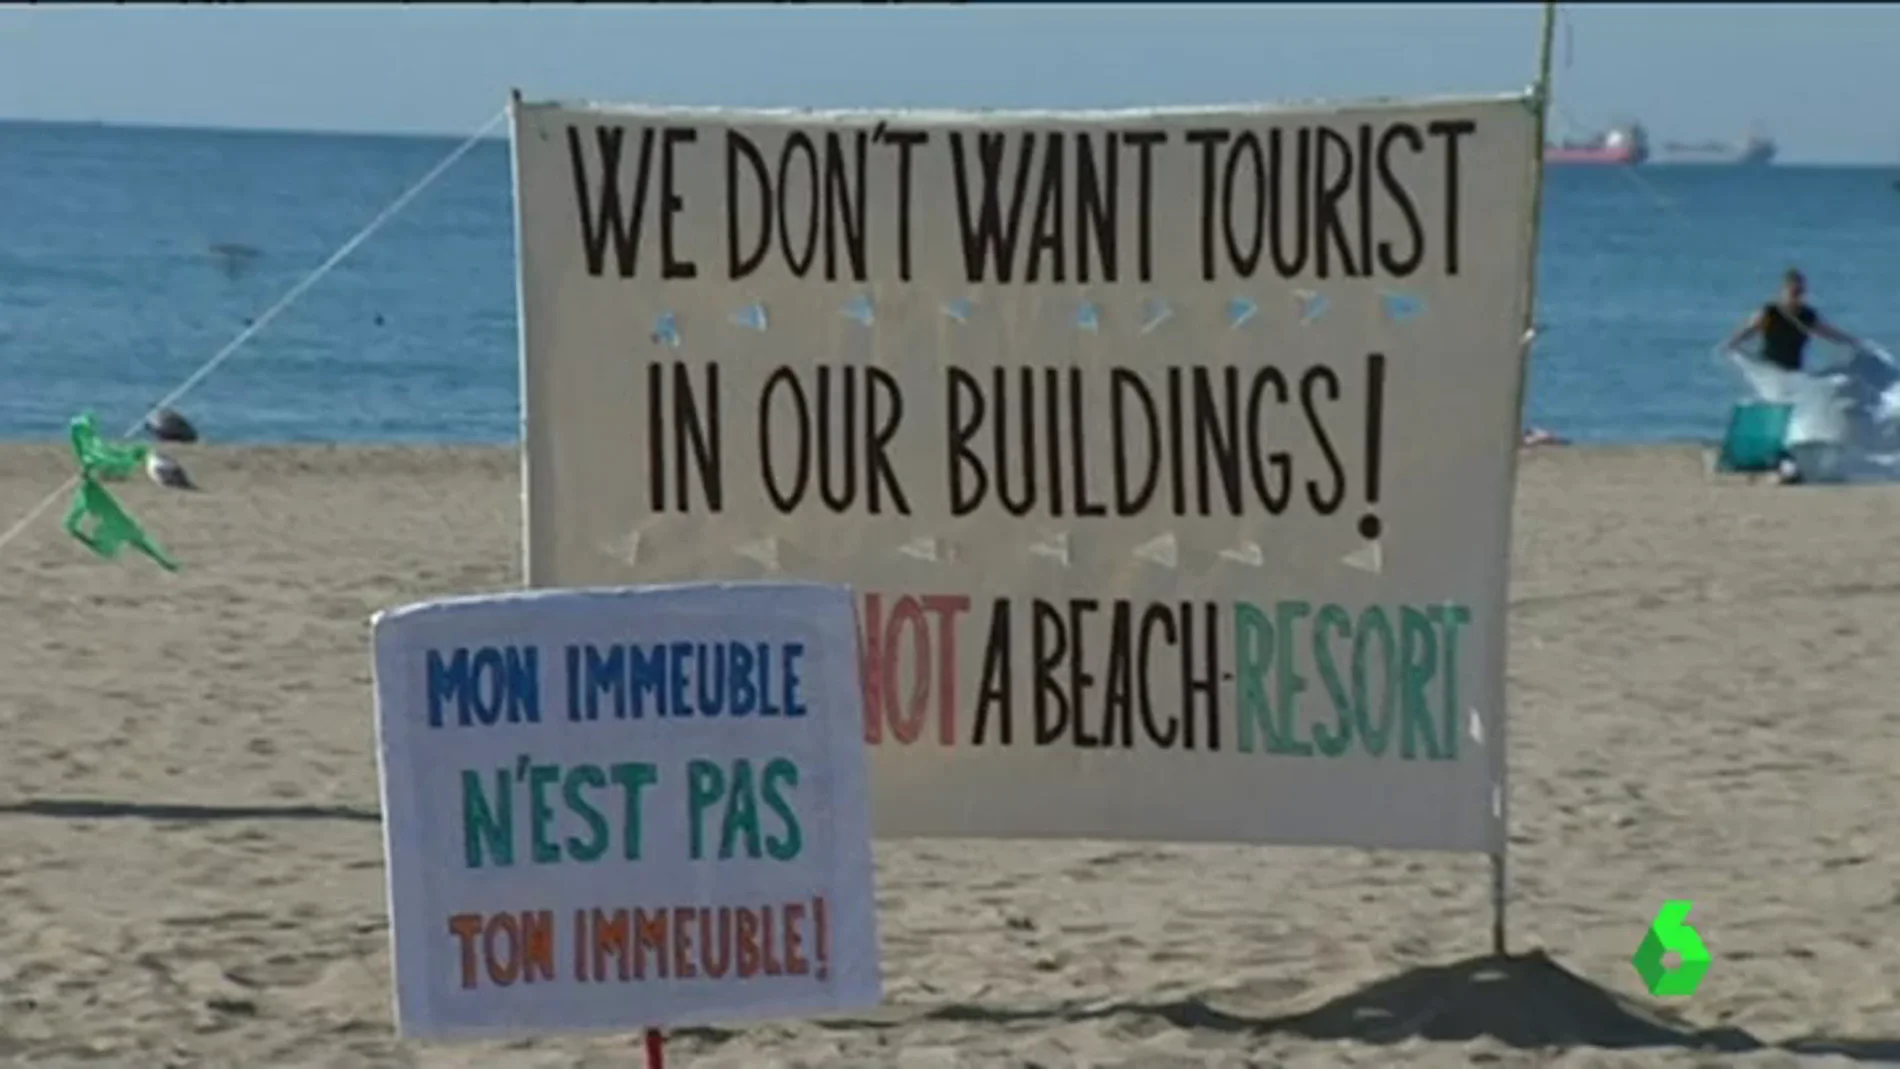 Un cartel contra el turismo de borrachera: "La playa no es un resort"